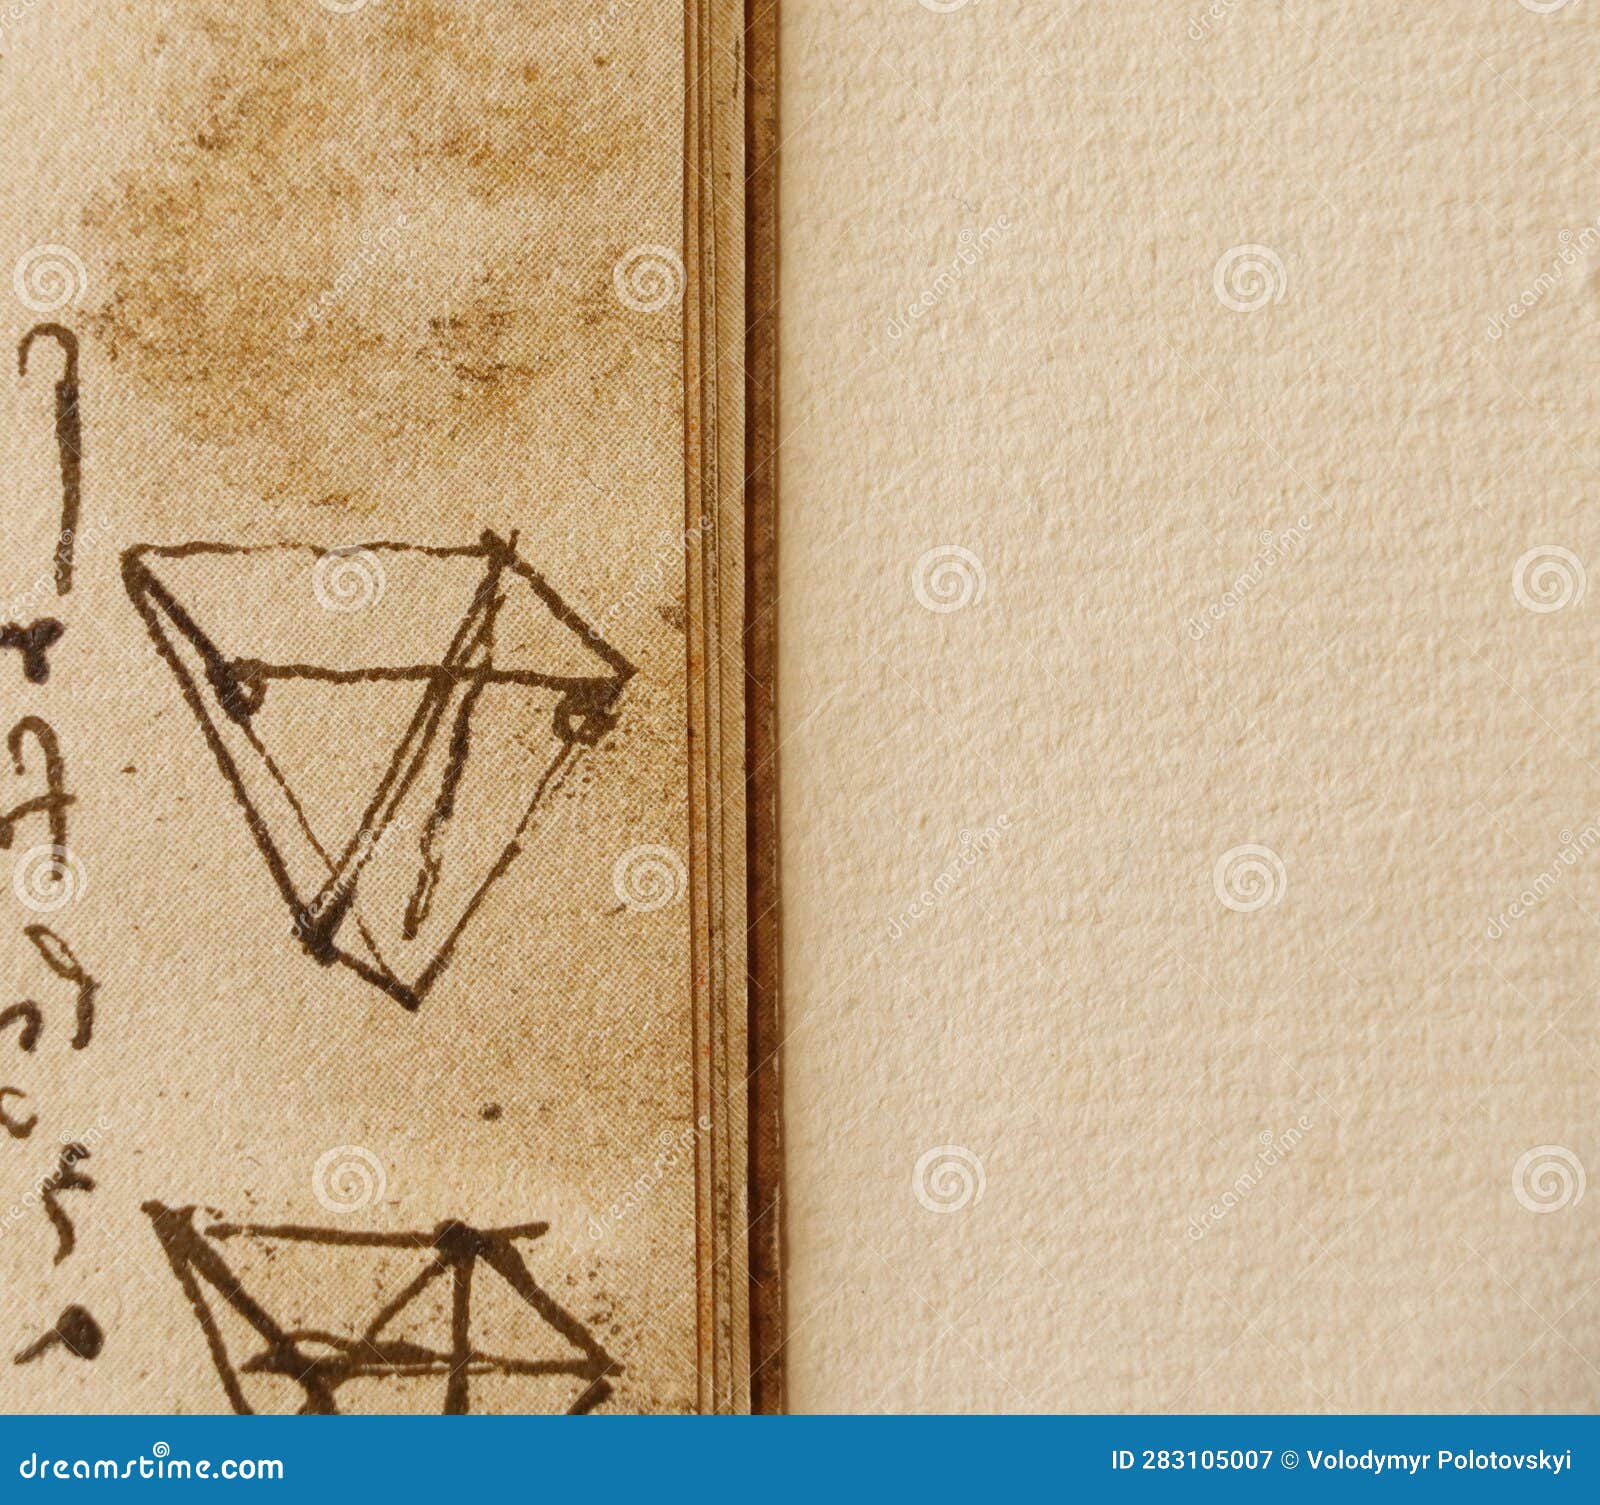 manuscript, drawings, blueprints by leonardo da vinci in the old book the codice sul volo, by e. rouveyre , 1901